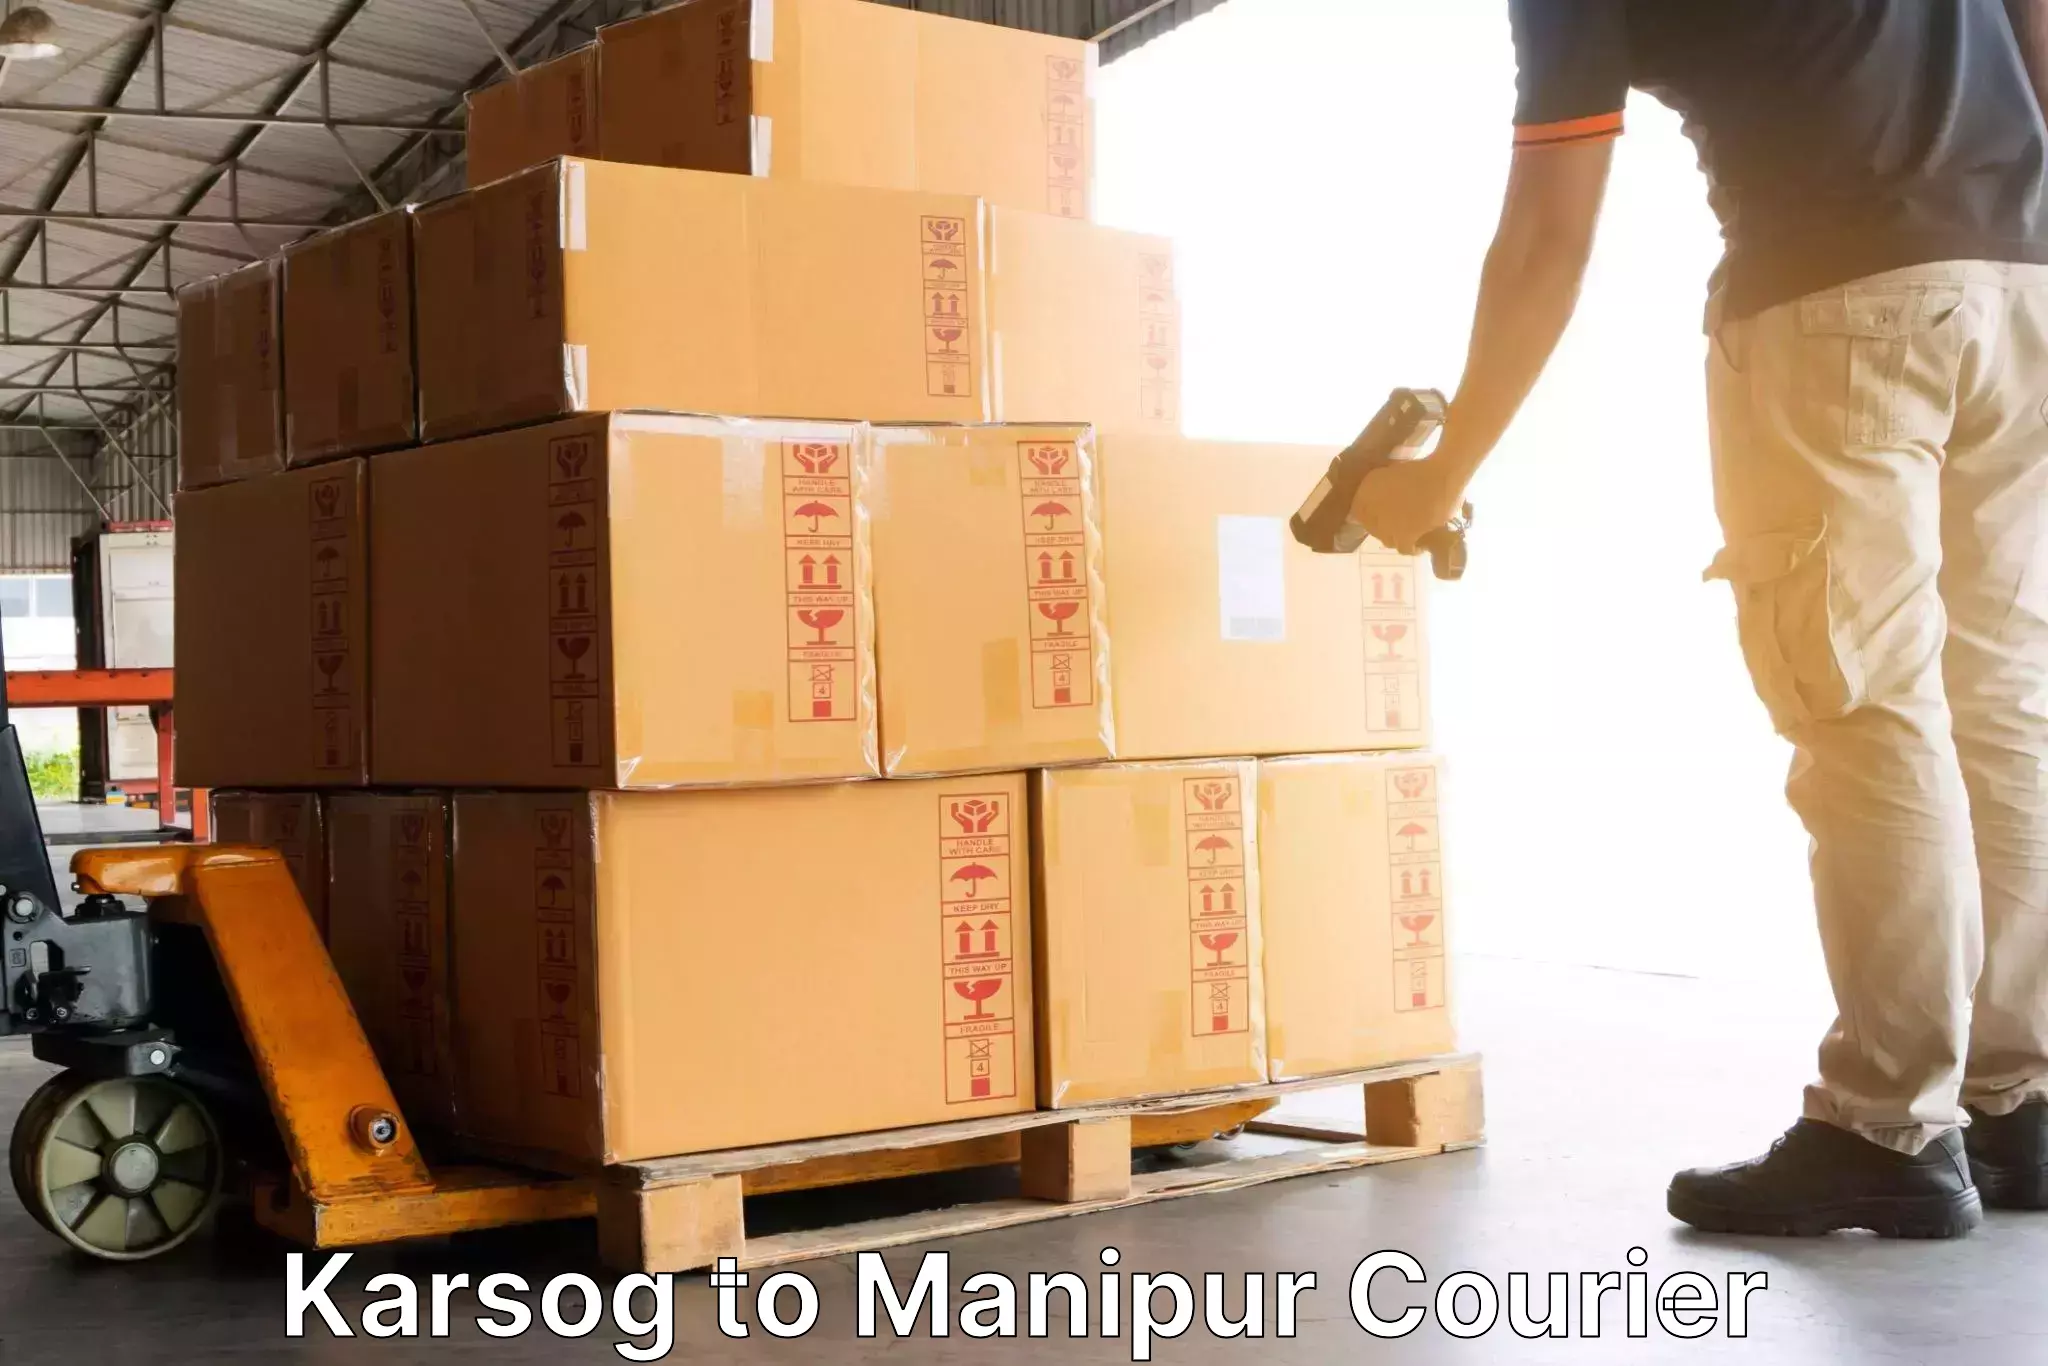 Weekend courier service in Karsog to Churachandpur